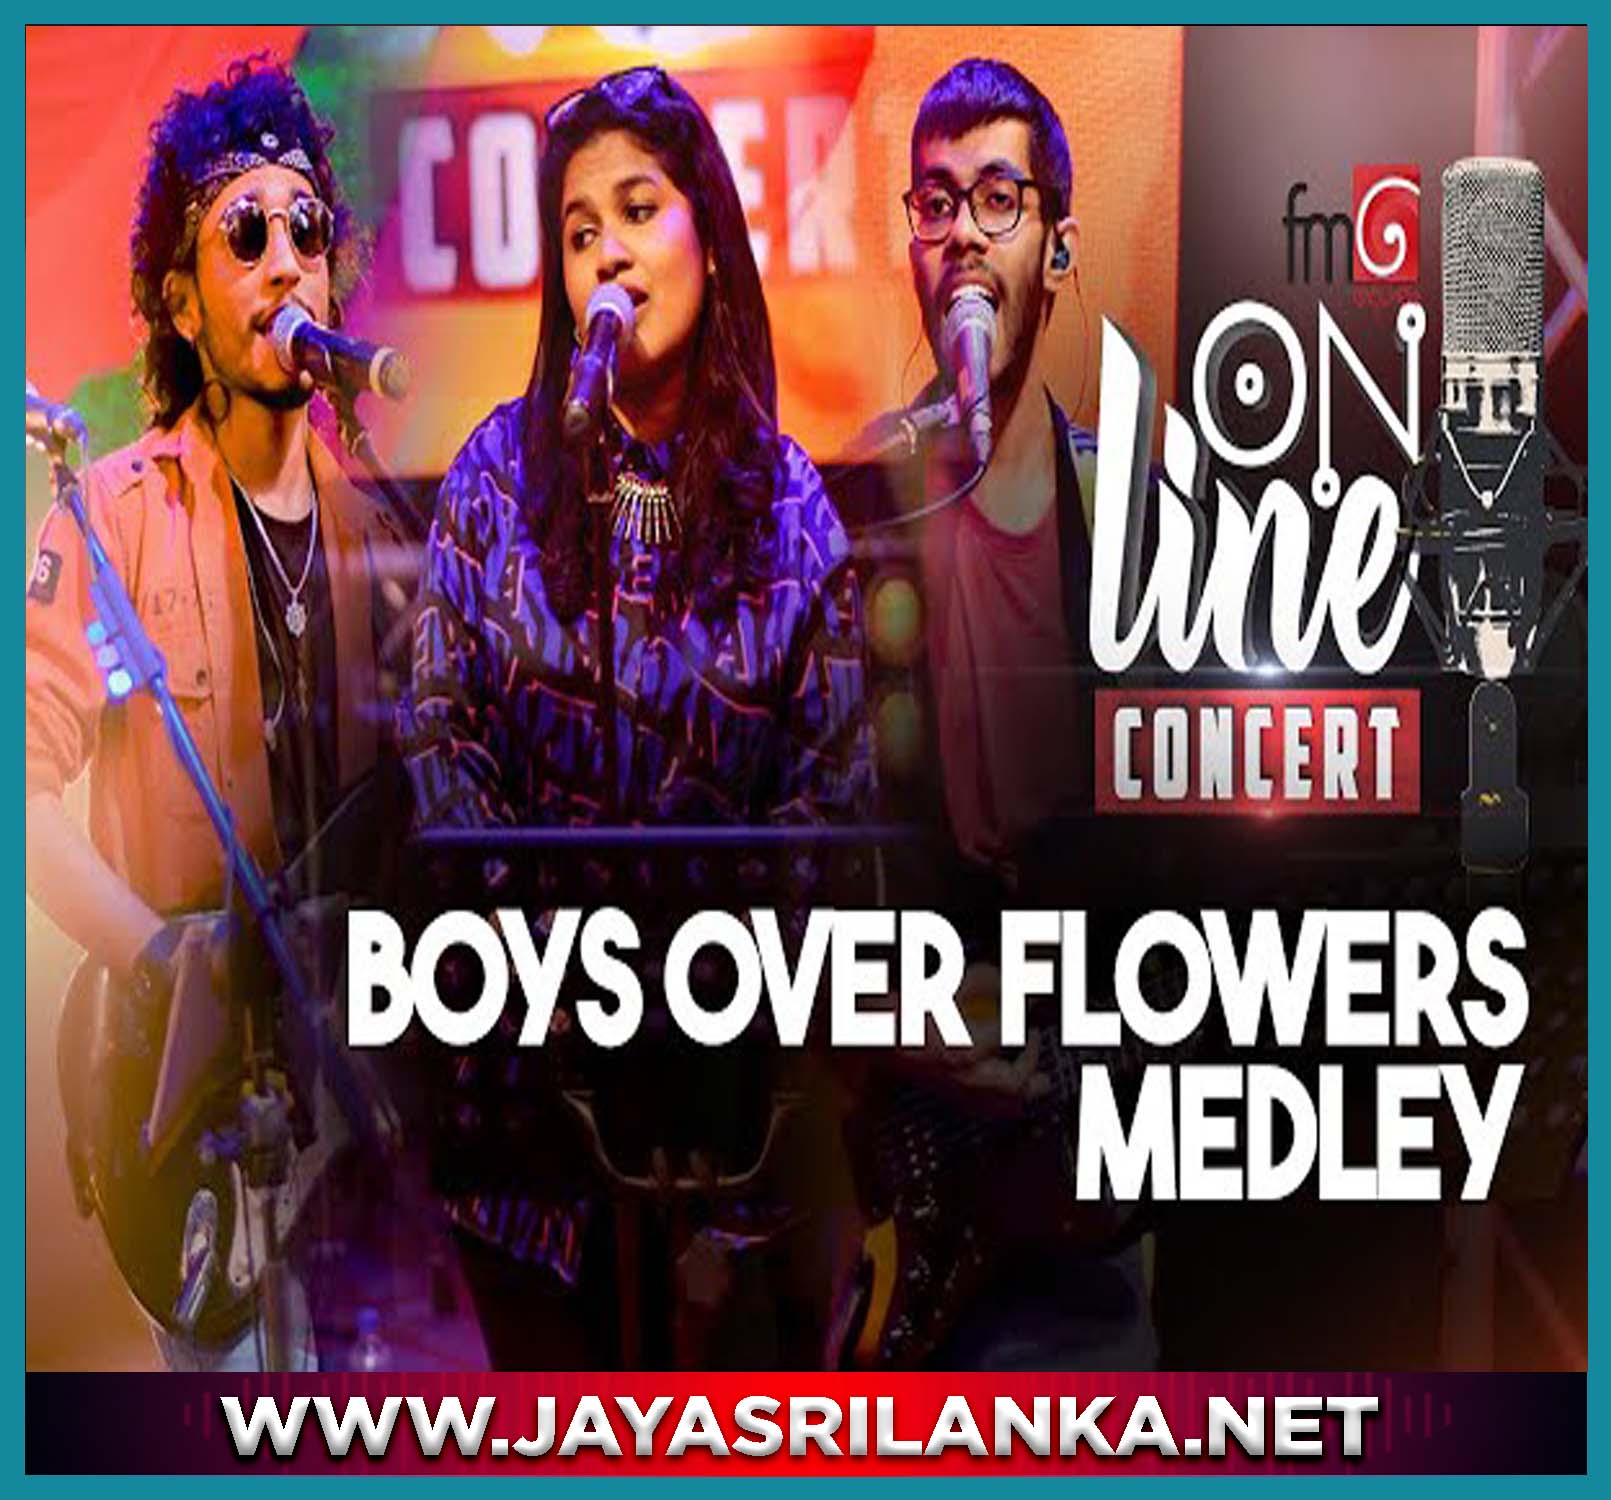 Boys Over Flowers Medley Derana Hits (FM Derana Online Concert)